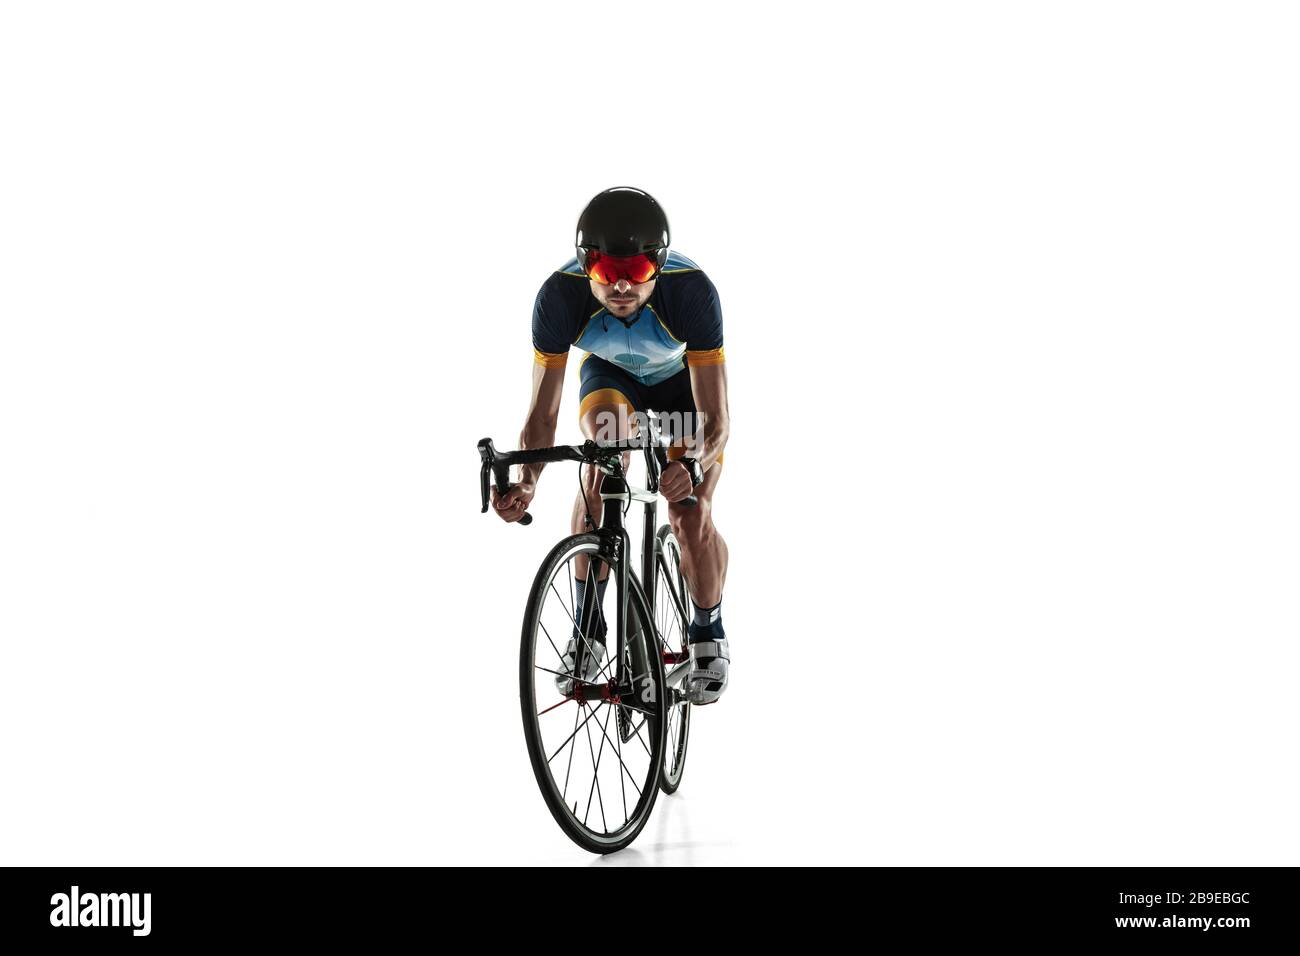 Triathlon atleta maschile ciclo di allenamento isolato su sfondo bianco studio. Il triatleta caucasico si esercita in bicicletta indossando attrezzature sportive. Concetto di stile di vita sano, sport, azione, movimento. Foto Stock